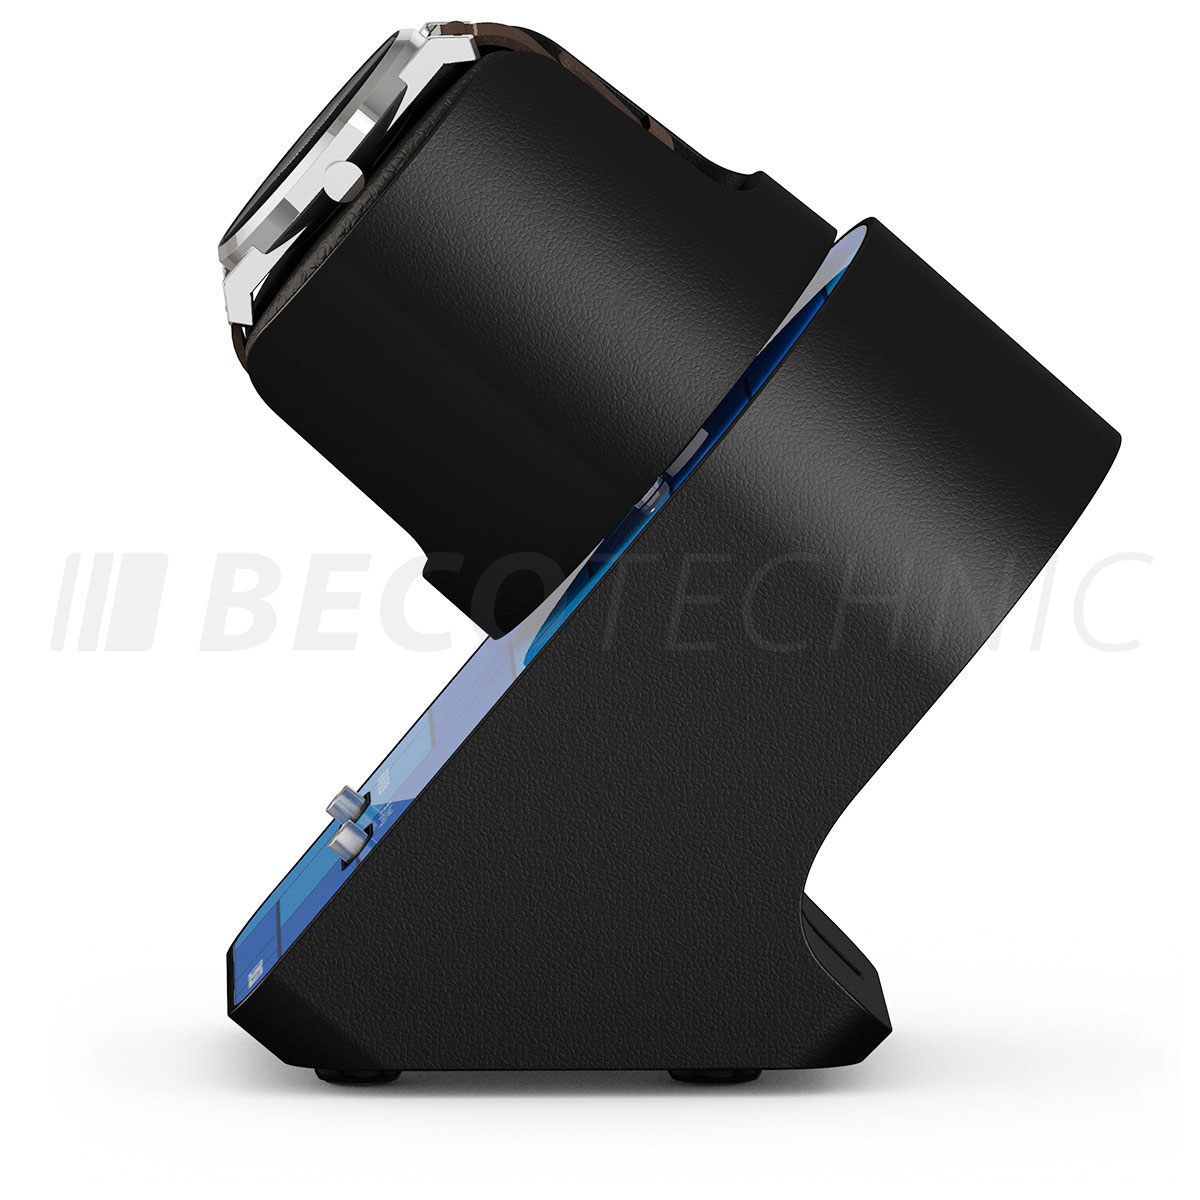 Boxy BLDC Nightstand, Uhrenbeweger für 1 Uhr, Graphic Blue, mit USB Ladekabel